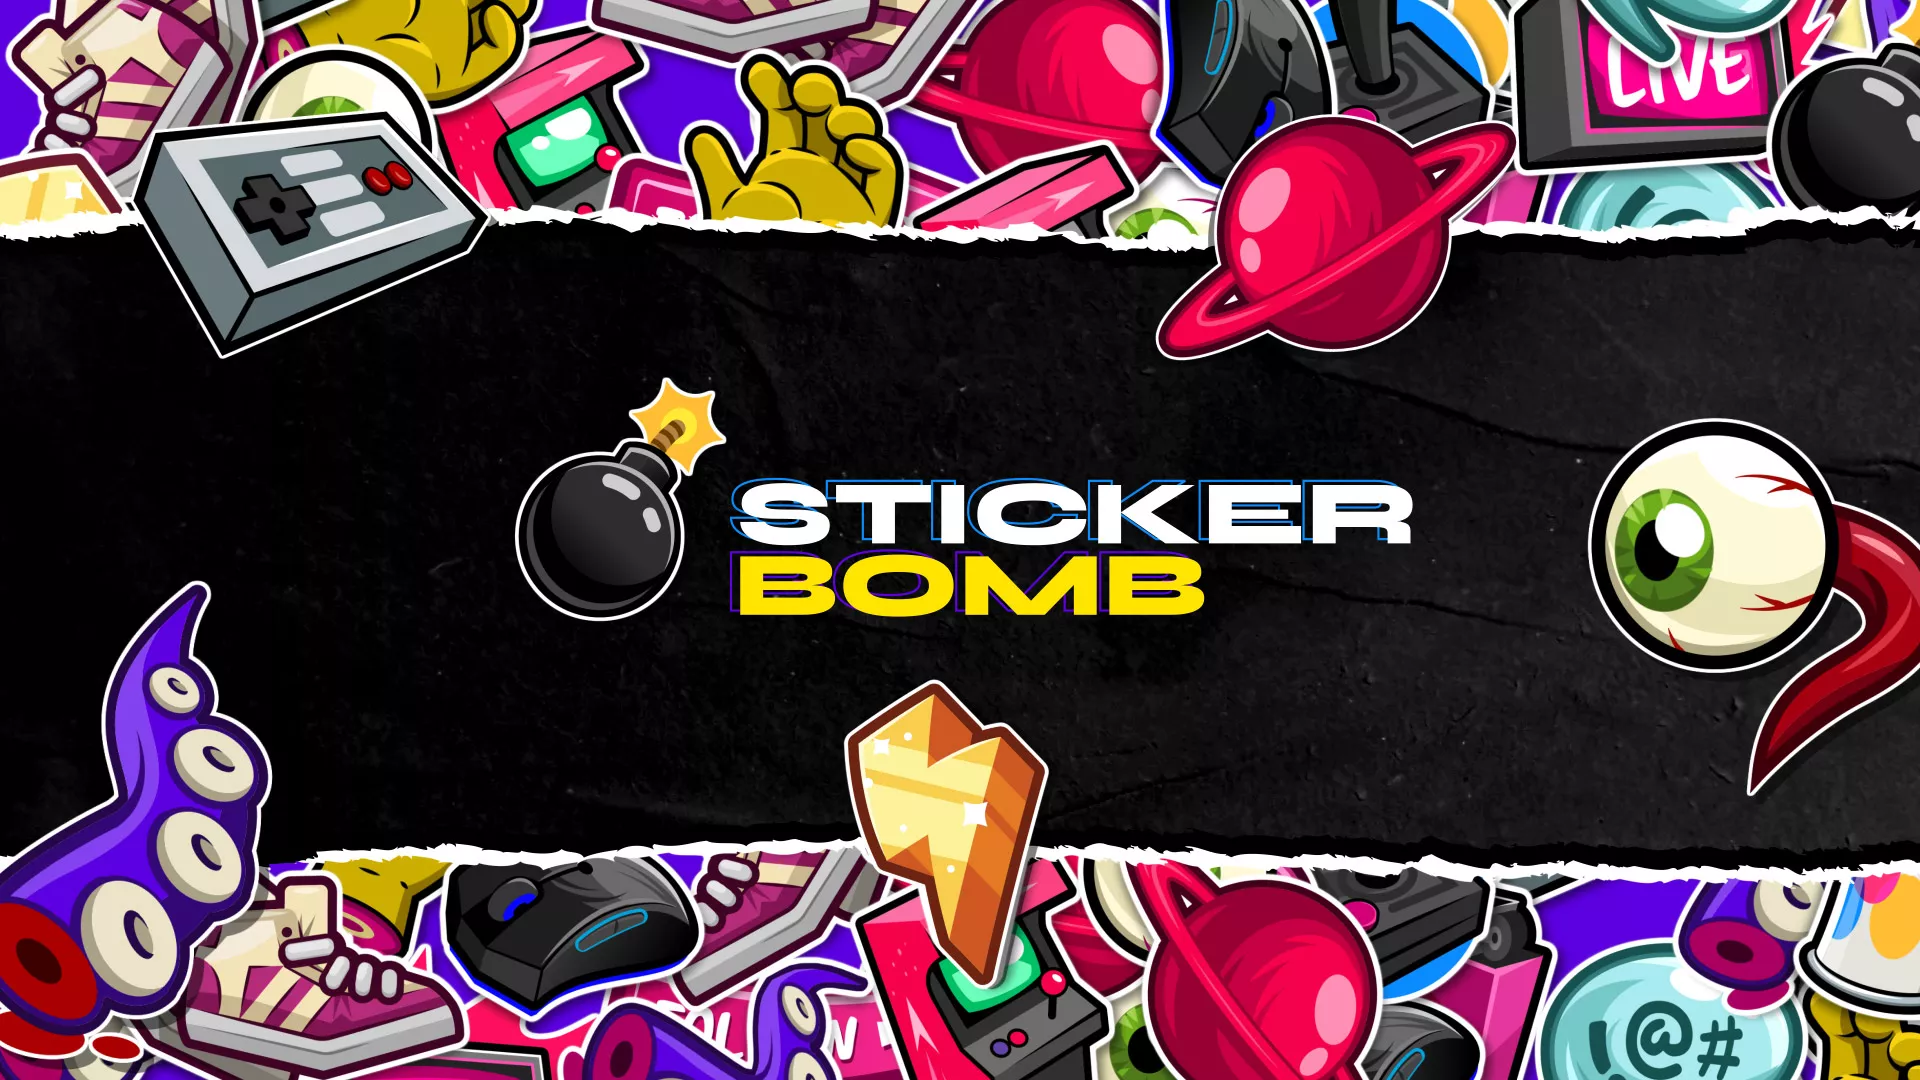 StickerBomb - Stream Pack - Main Image